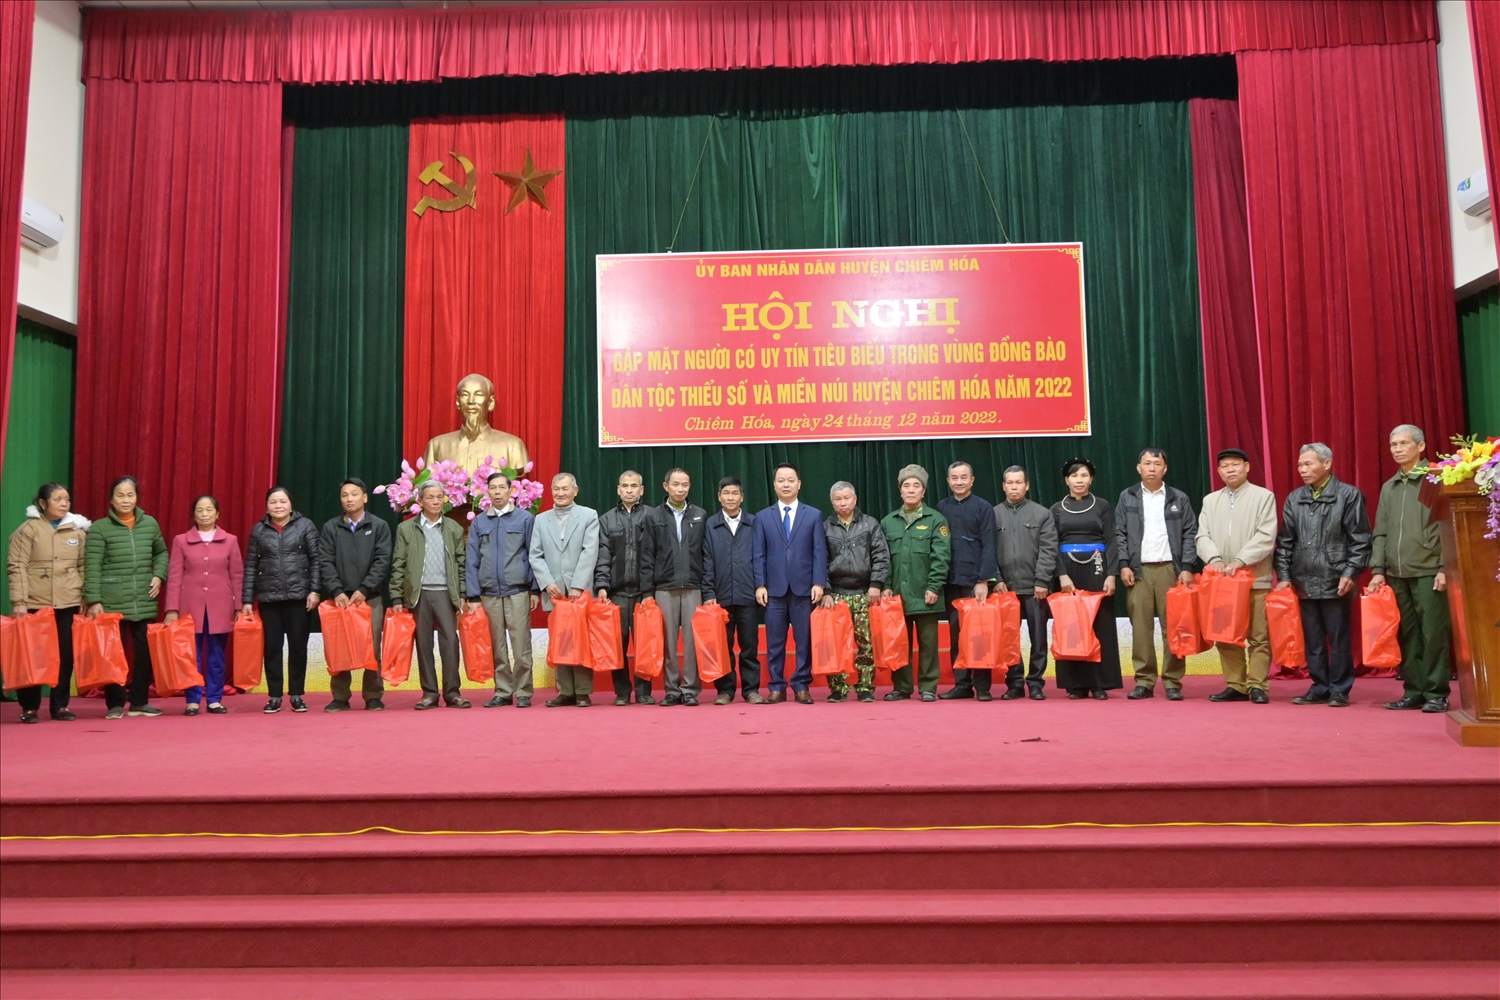 Ông Vũ Đình Tân, Phó Chủ tịch UBND huyện Chiêm Hóa tặng quà Người có uy tín trong đồng bào DTTS trên địa bàn huyện 